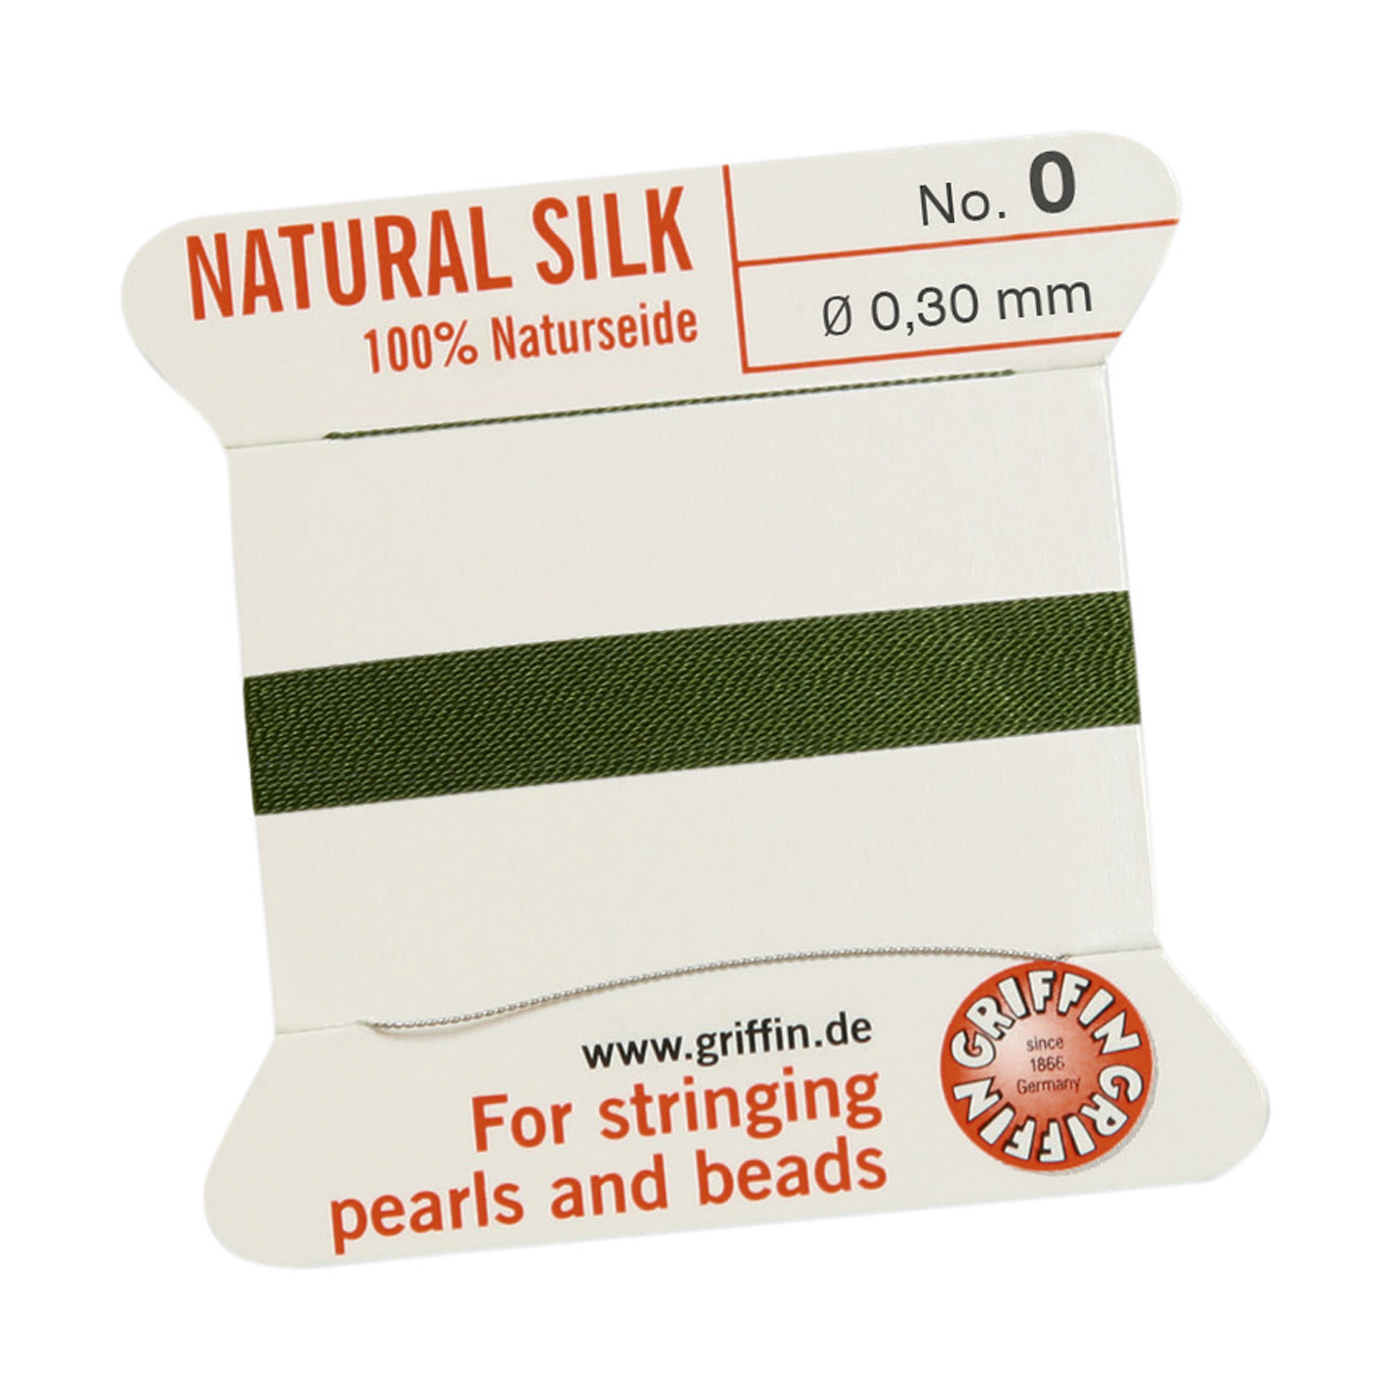 Bead Cord 100% Natural Silk, Olive Green, No. 0 - 2 m